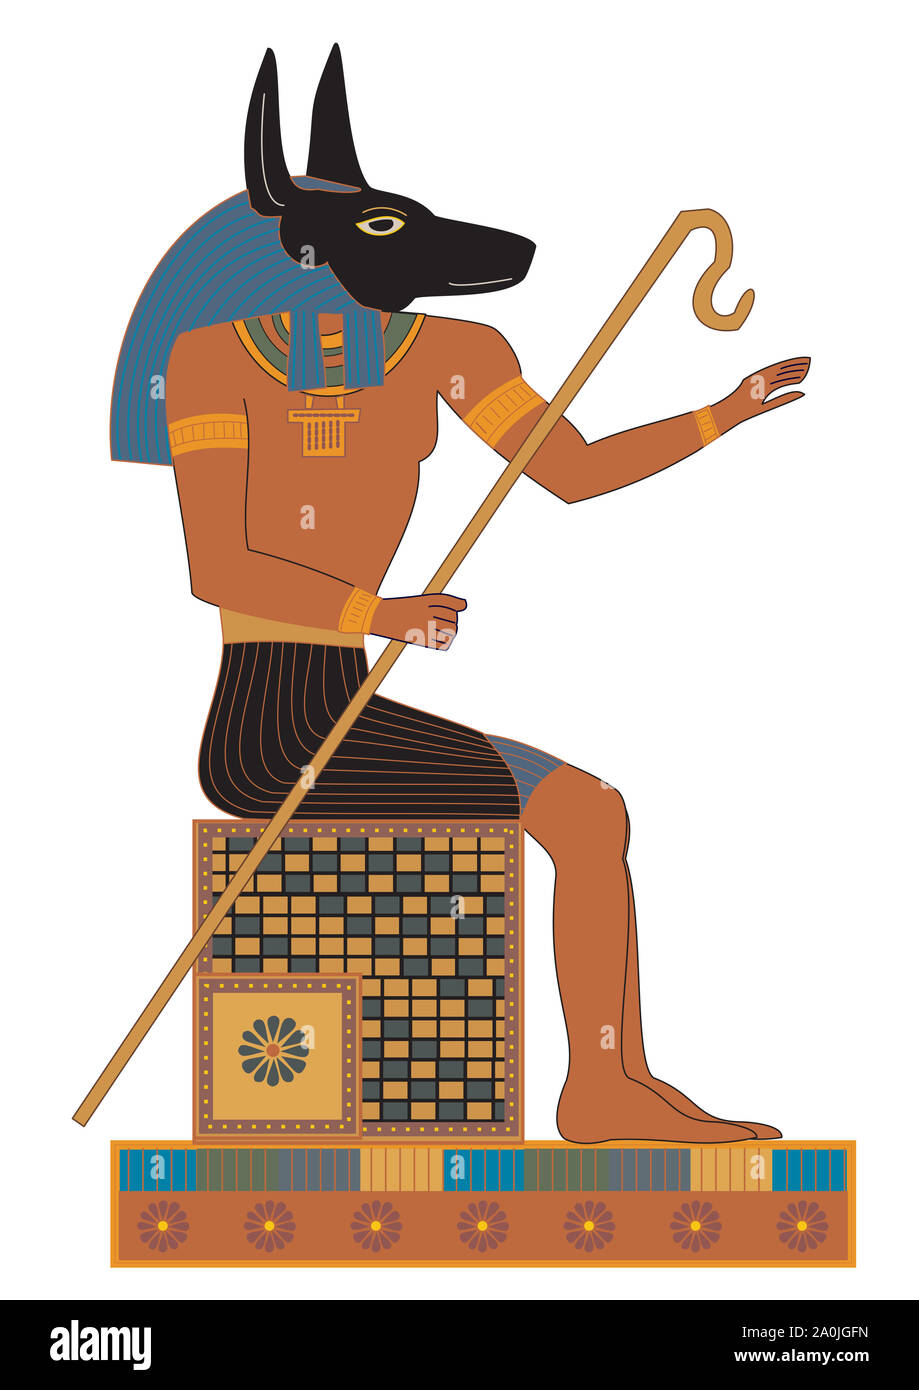 Ancient Egypt hieroglyphs - God named Anubis Stock Photo